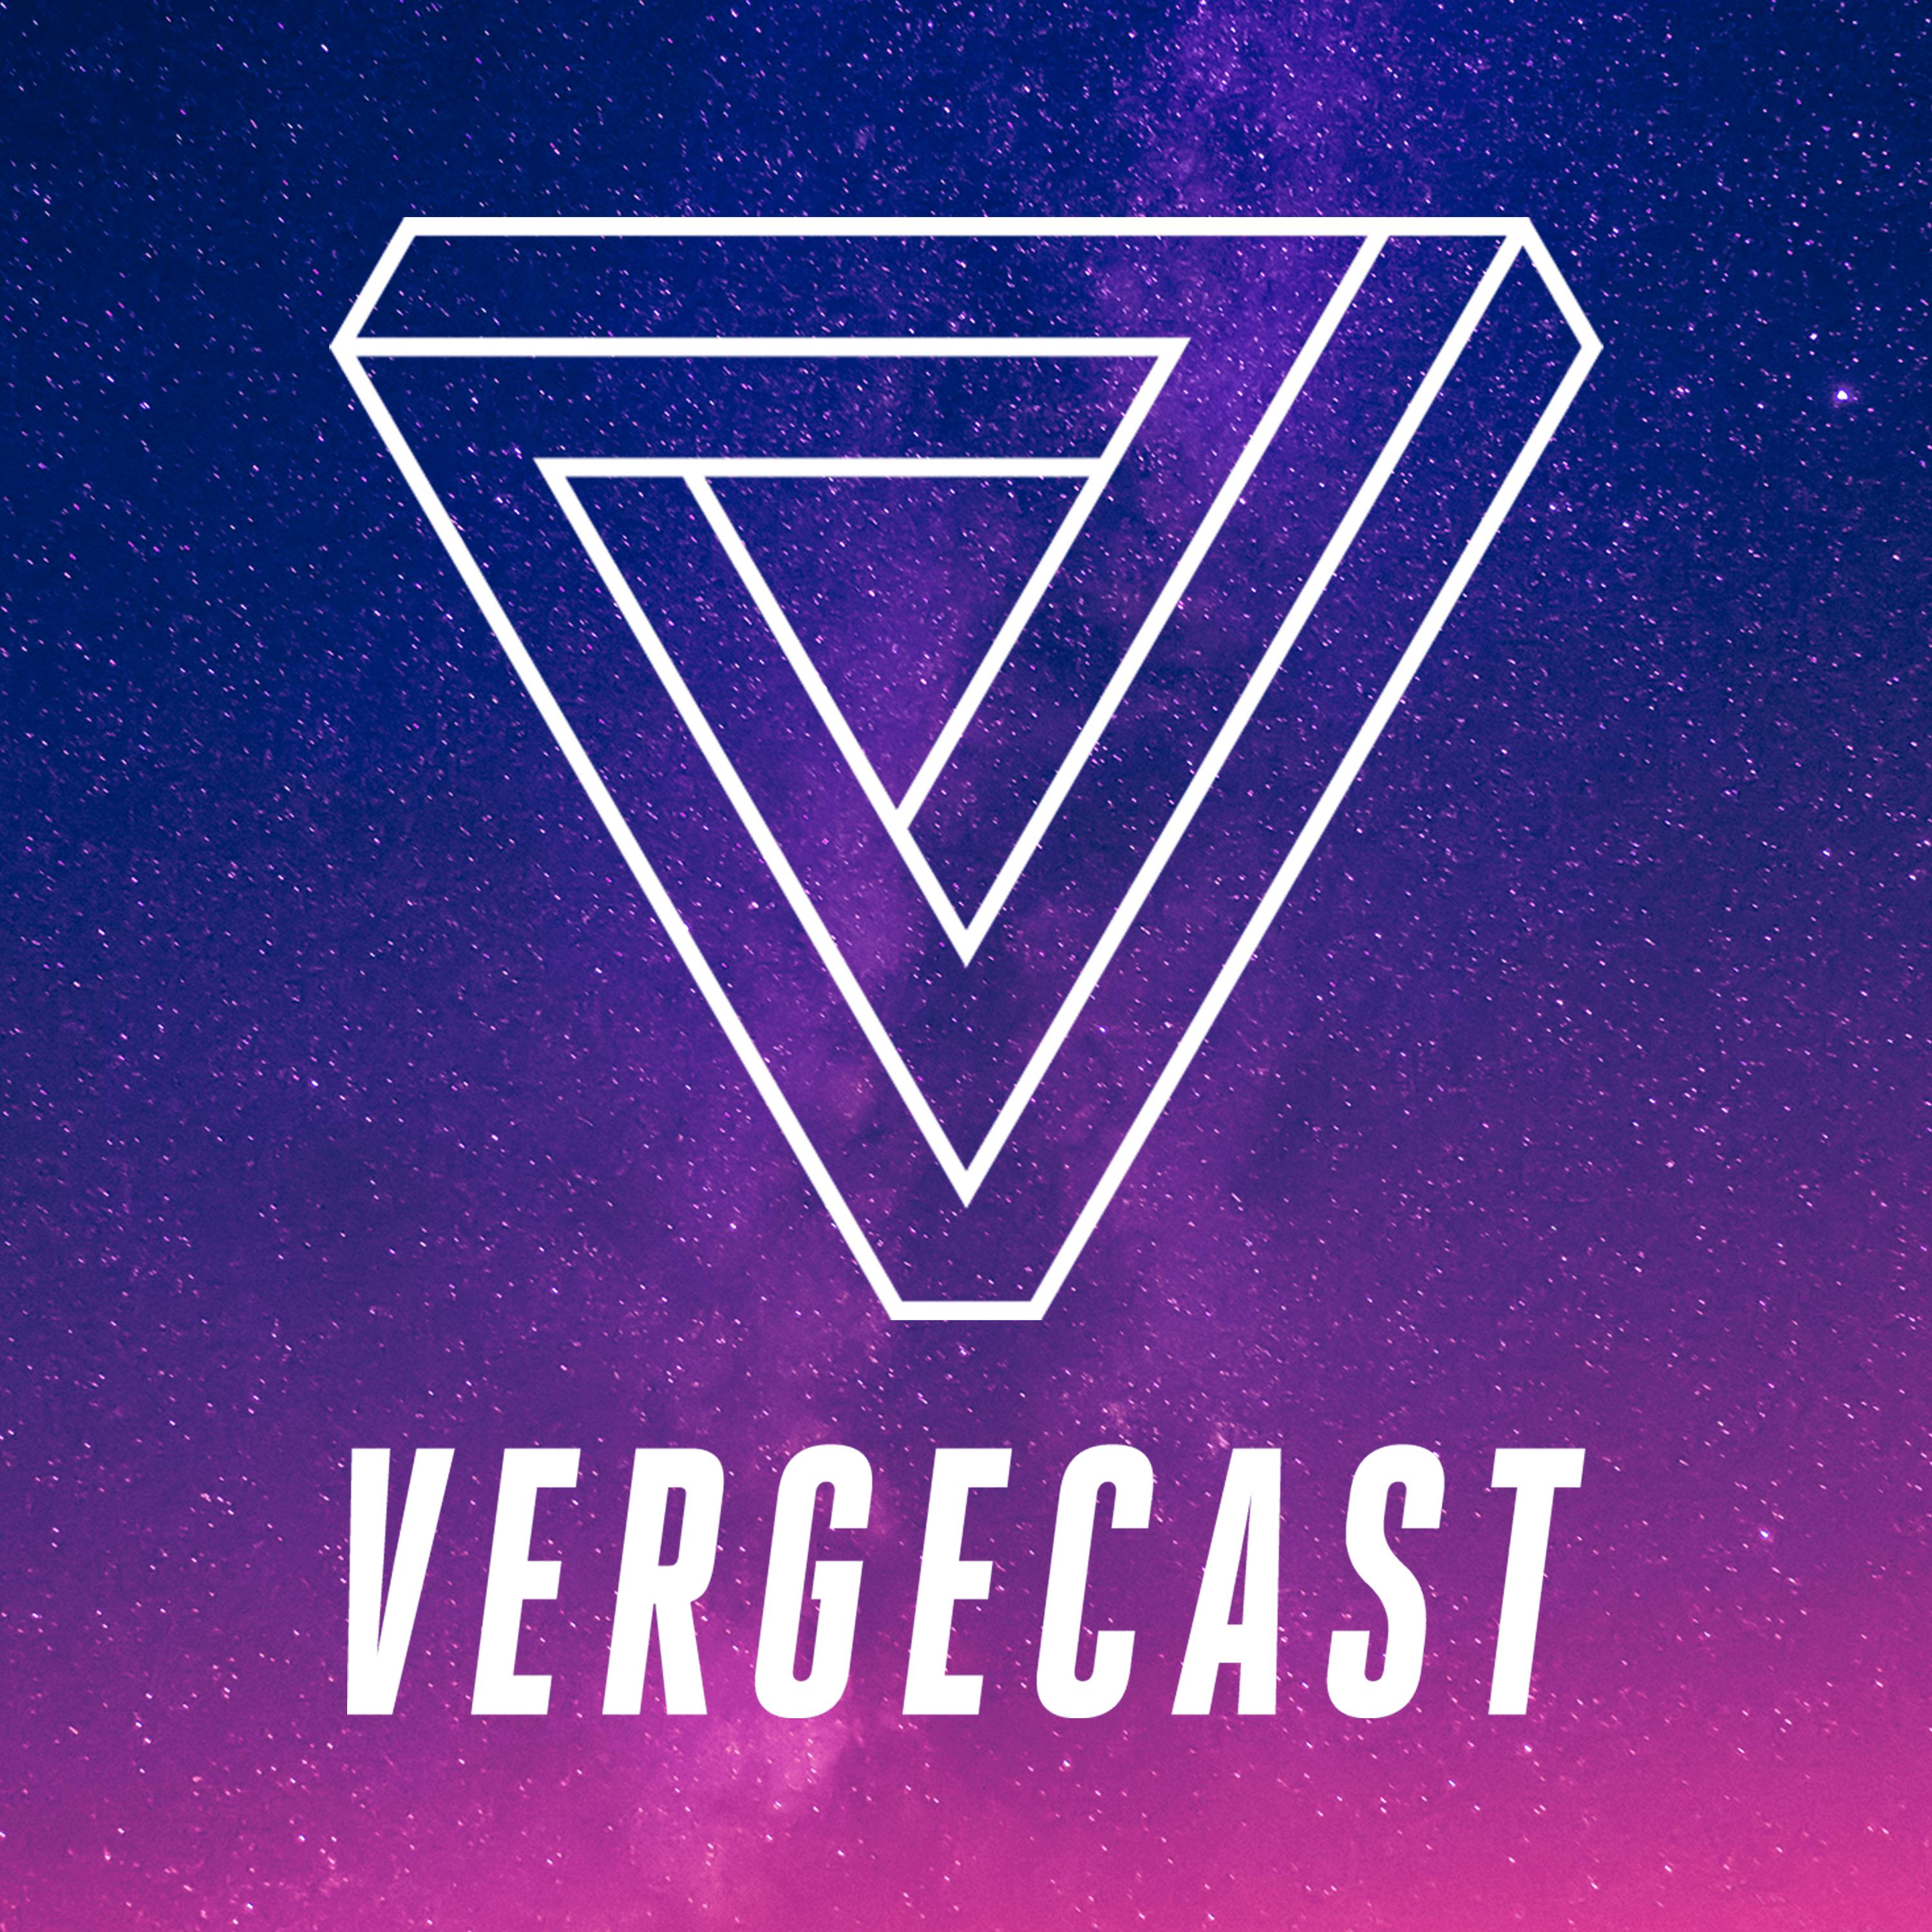 The Vergecast Podcast Addict - black magic 2 roblox trello